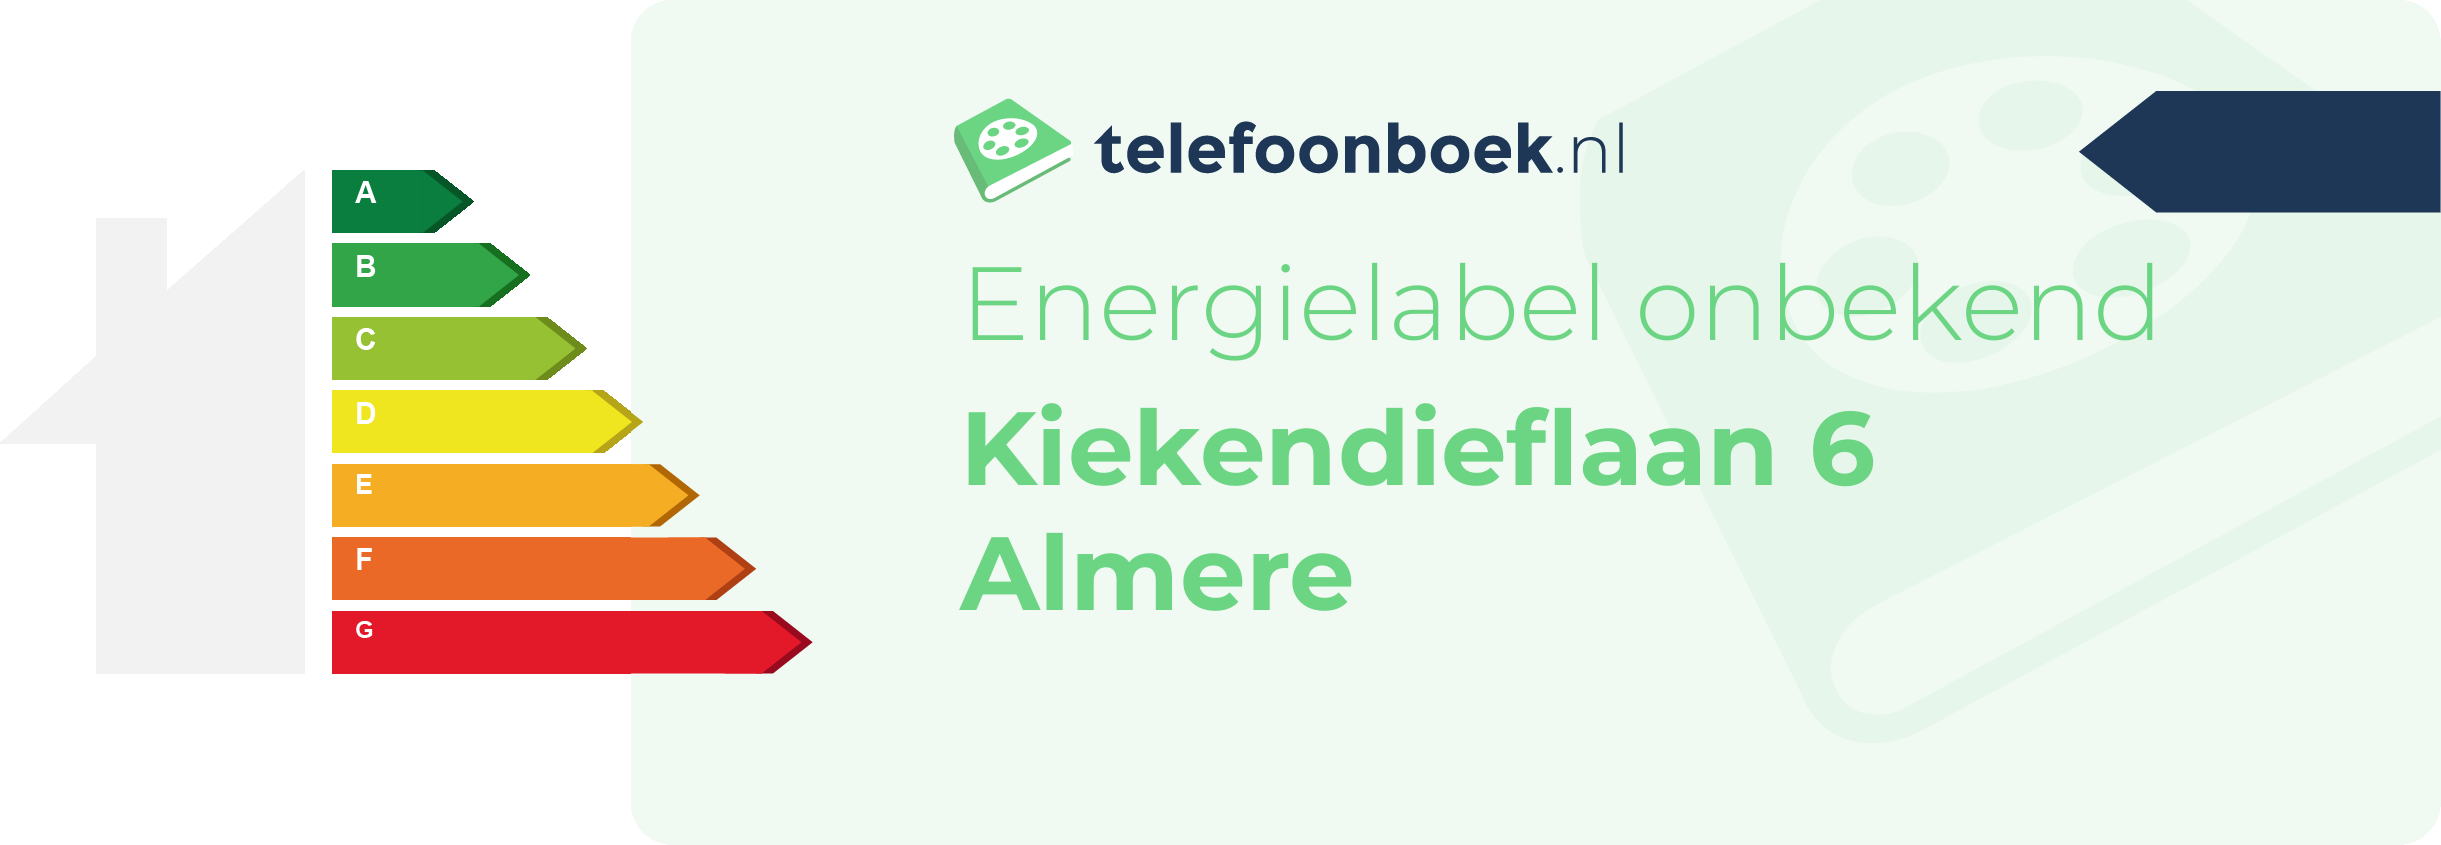 Energielabel Kiekendieflaan 6 Almere